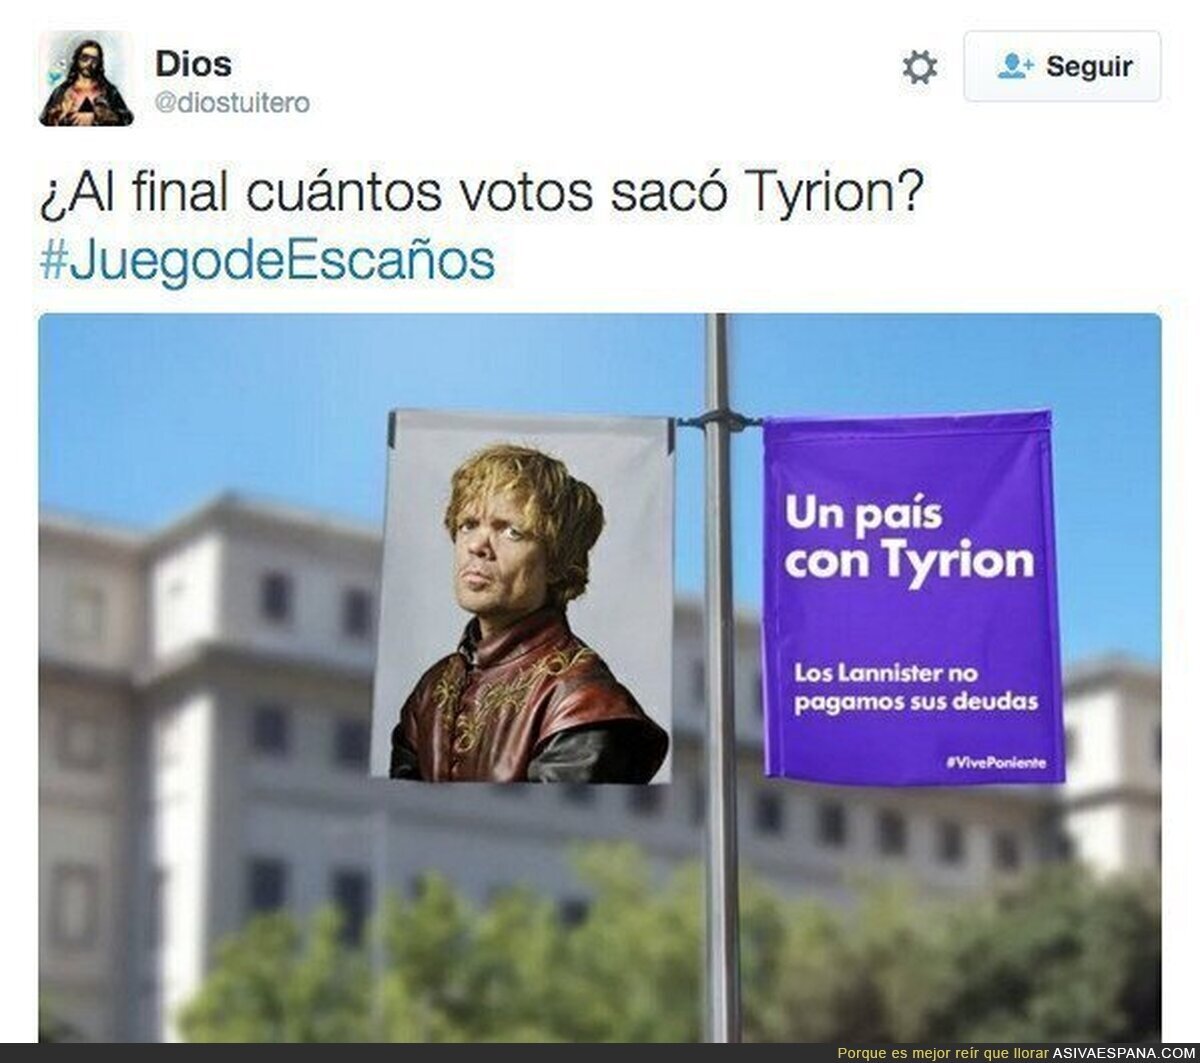 Los mejores tuits de #JuegoDeEscaños. Que empiece la guerra